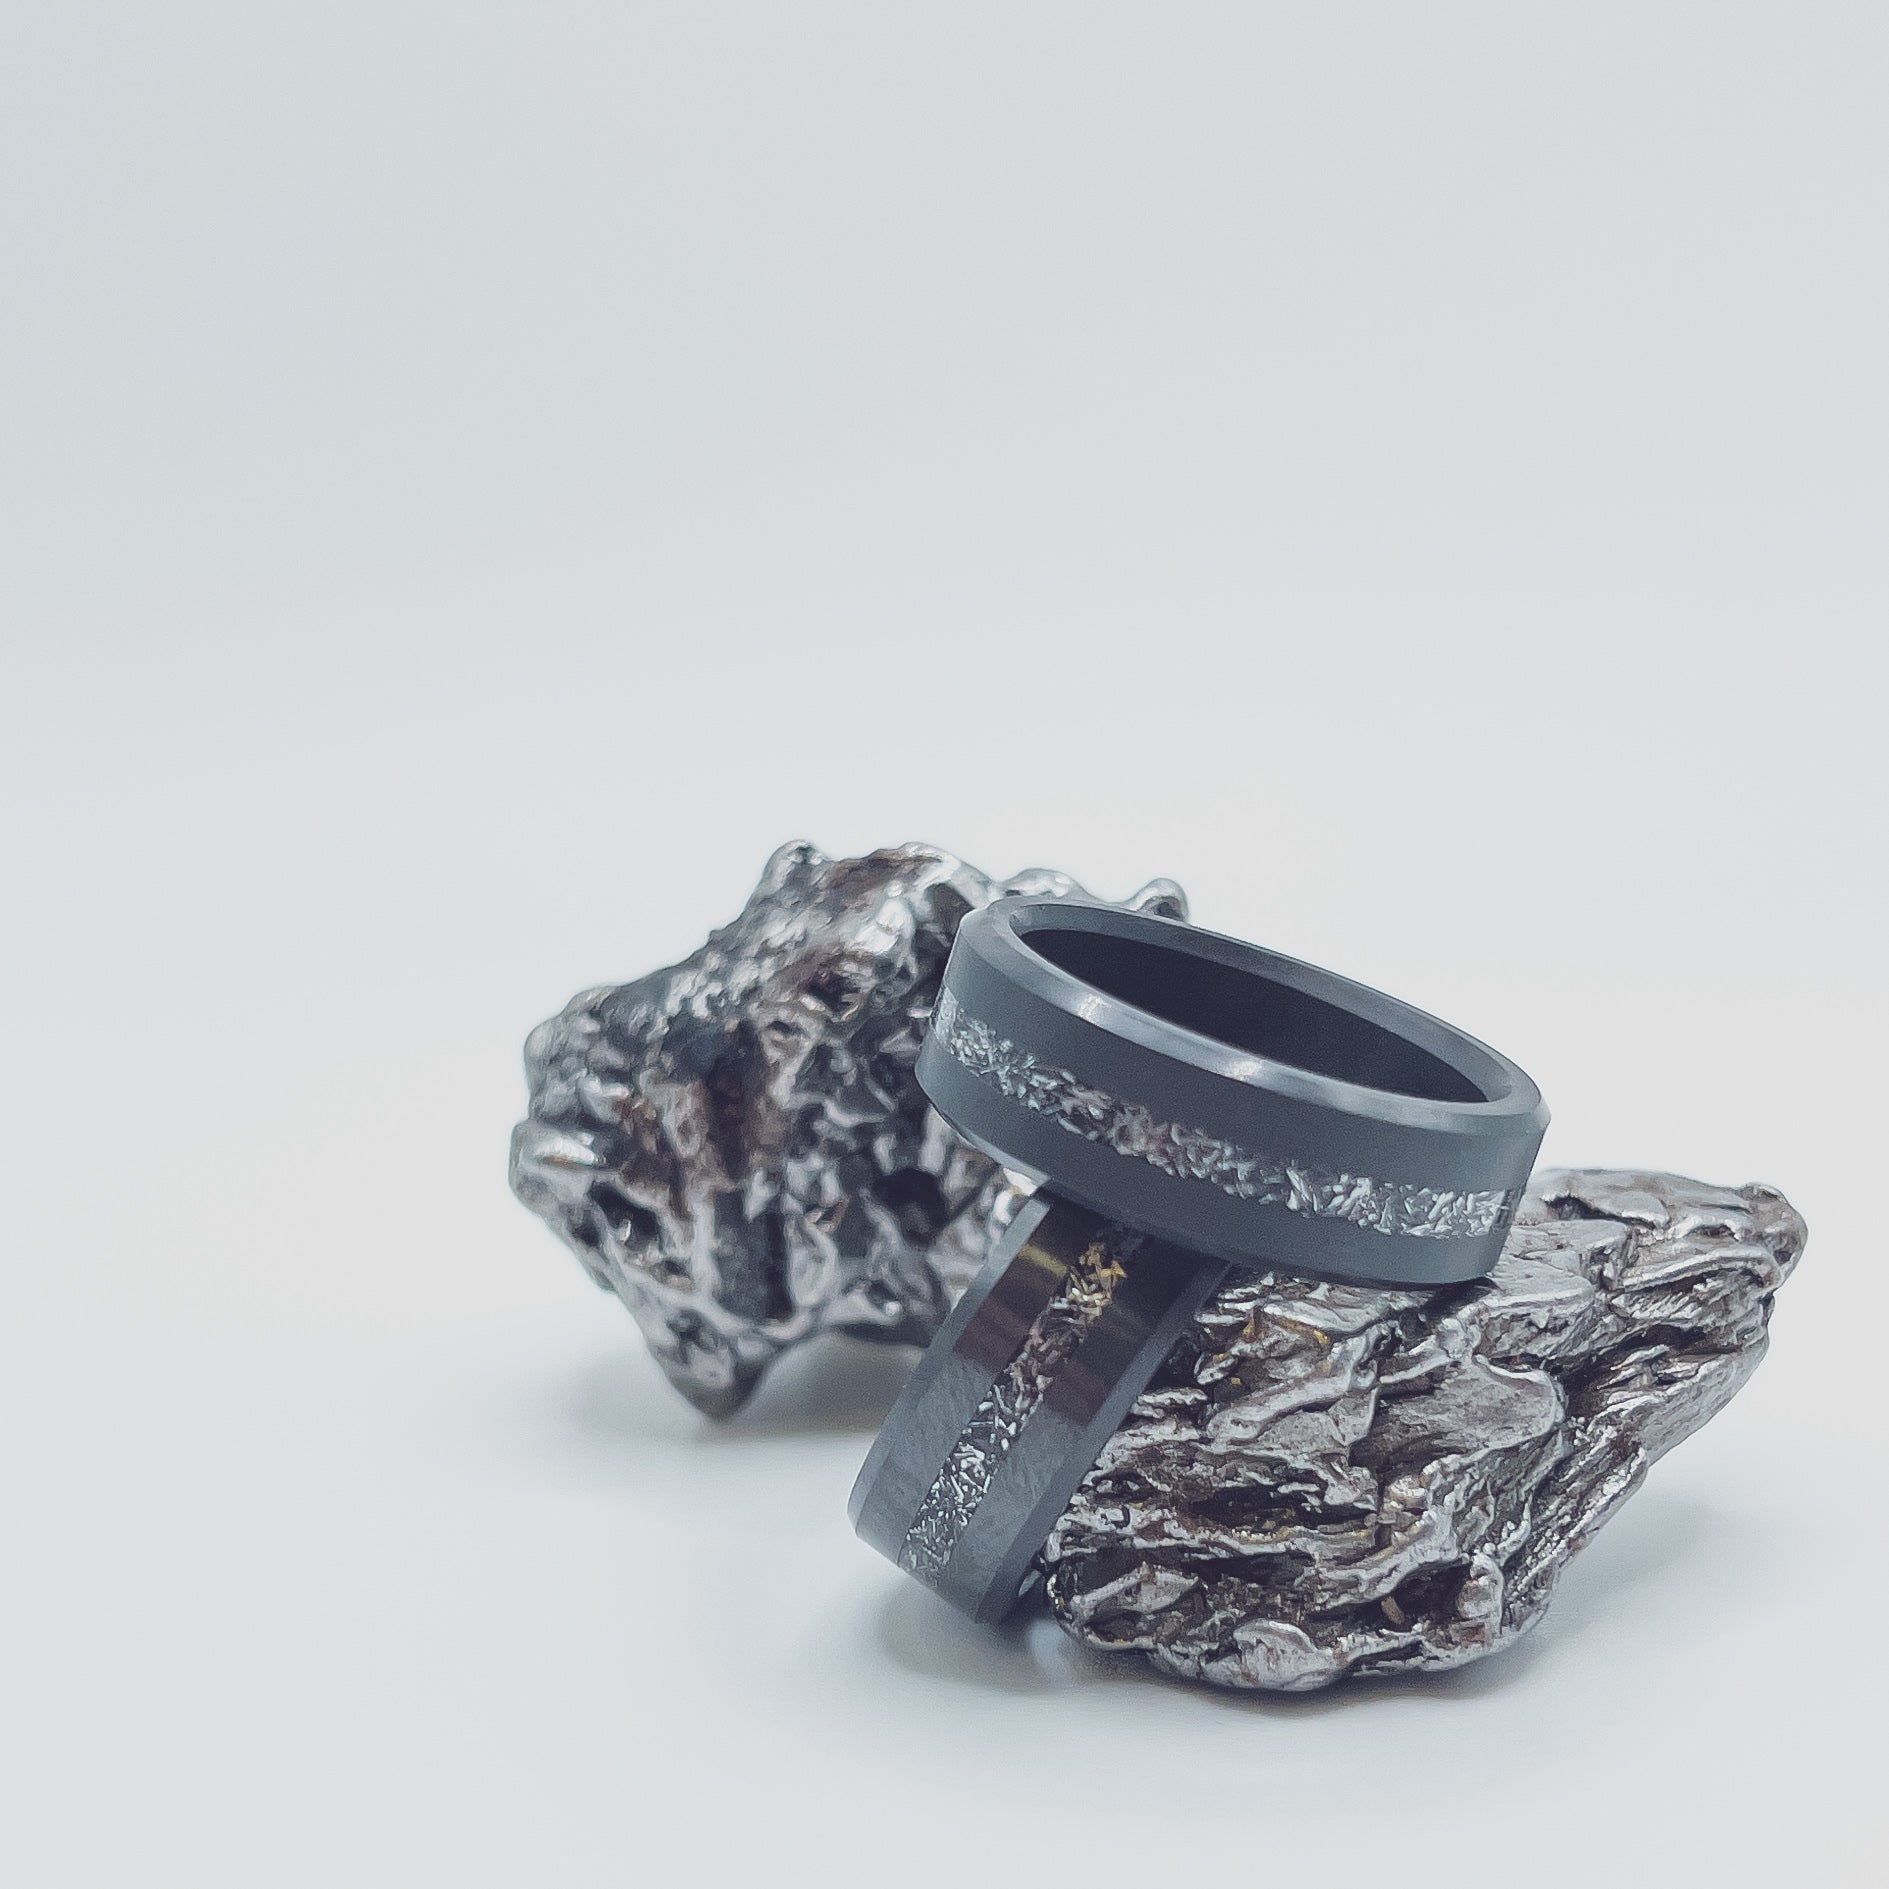 Black Diamond - Men’s Ring 8mm - Authentic Muonionalausta Meteorite Inlay - ARES - Elysium Black Diamond